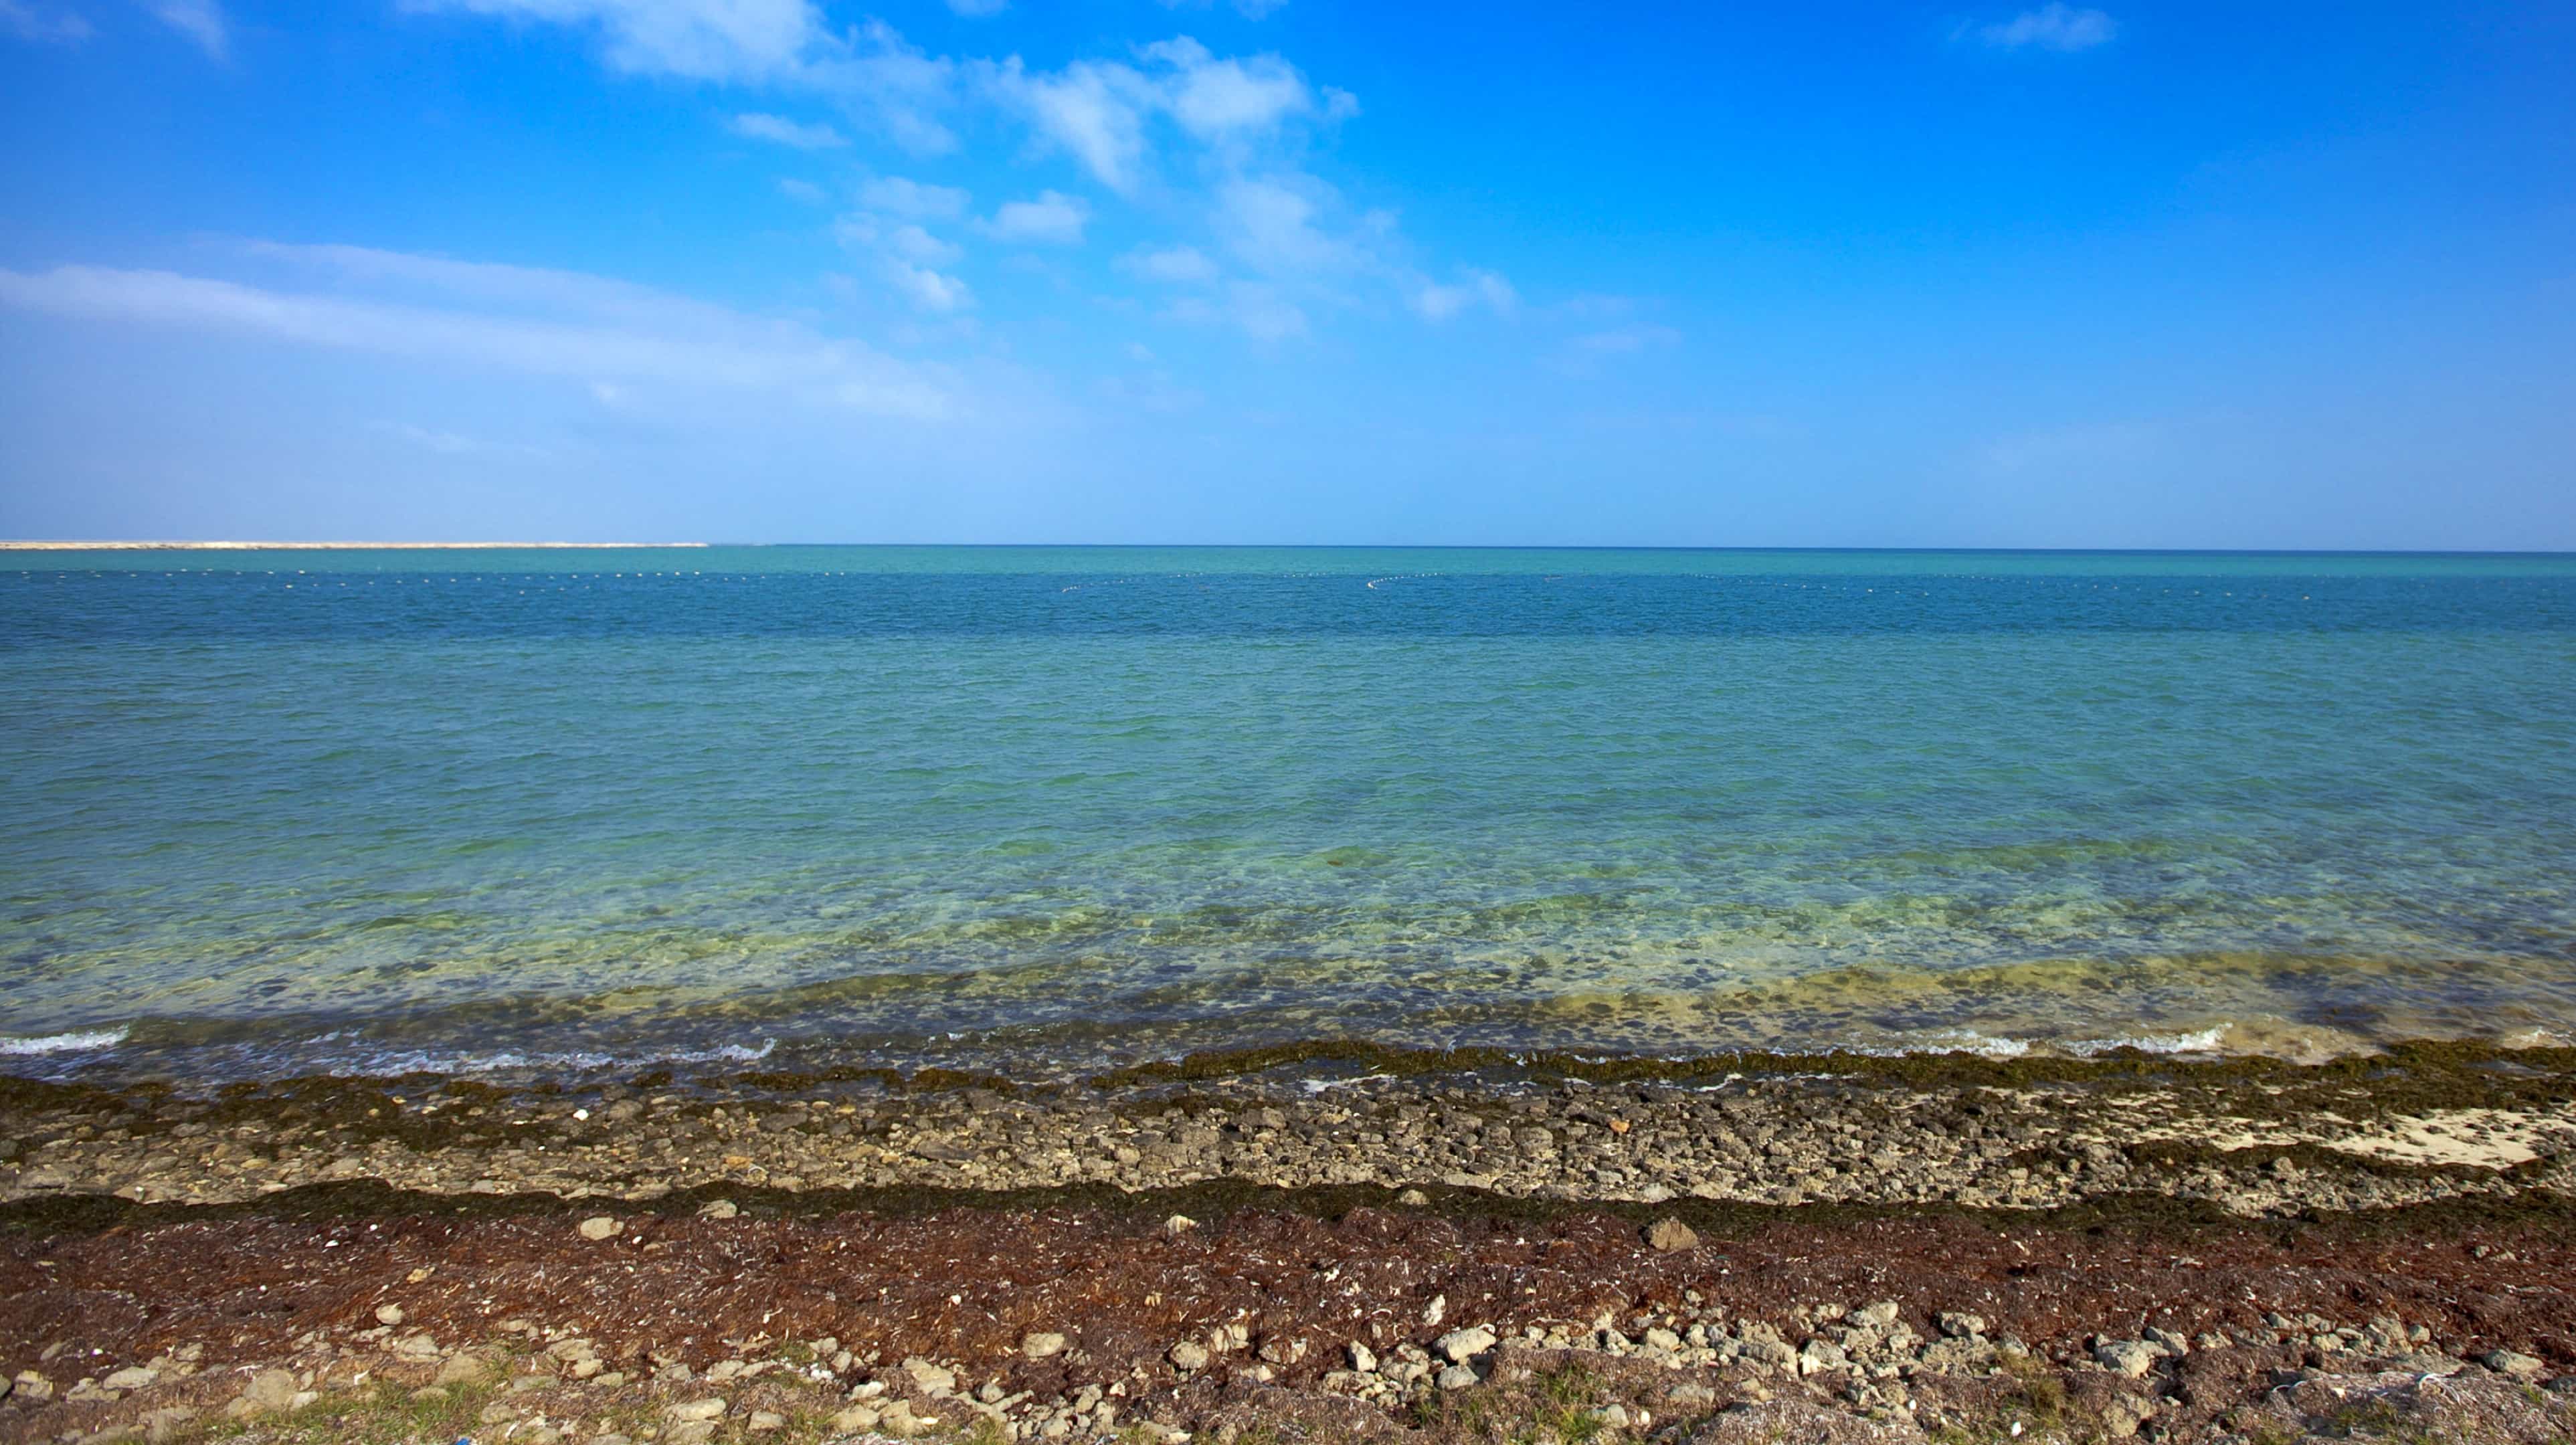 صورة لبحر وشاطئ صخري